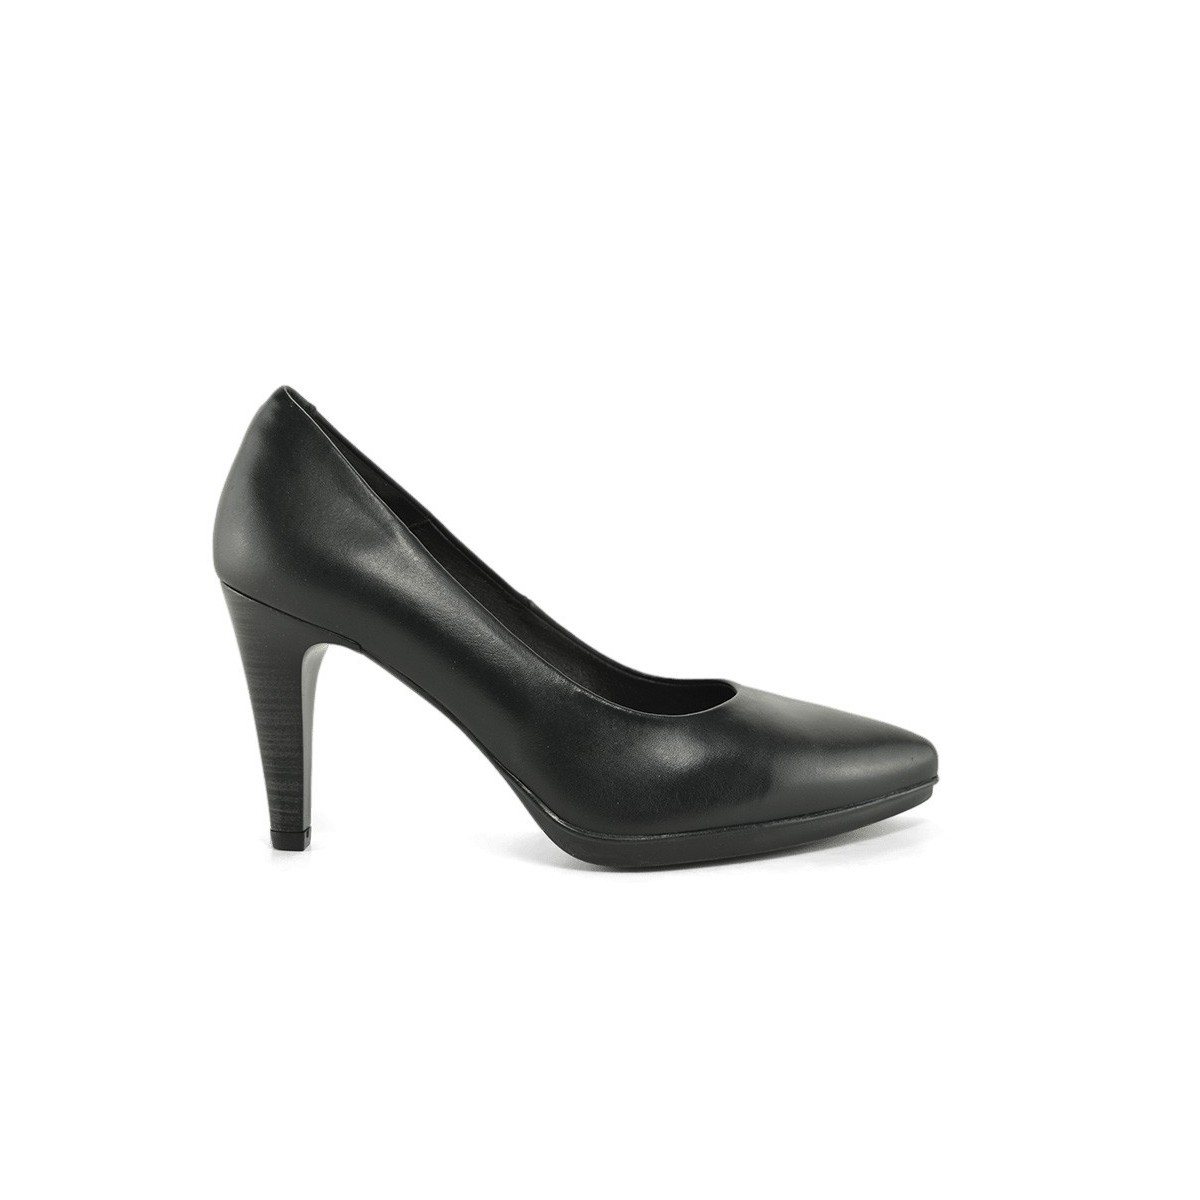 Zapatos Salones by Desiree Zapatos salones de mujer con tacón y sistema TOTAL FLEX , fabricados en piel color negro y plantilla 